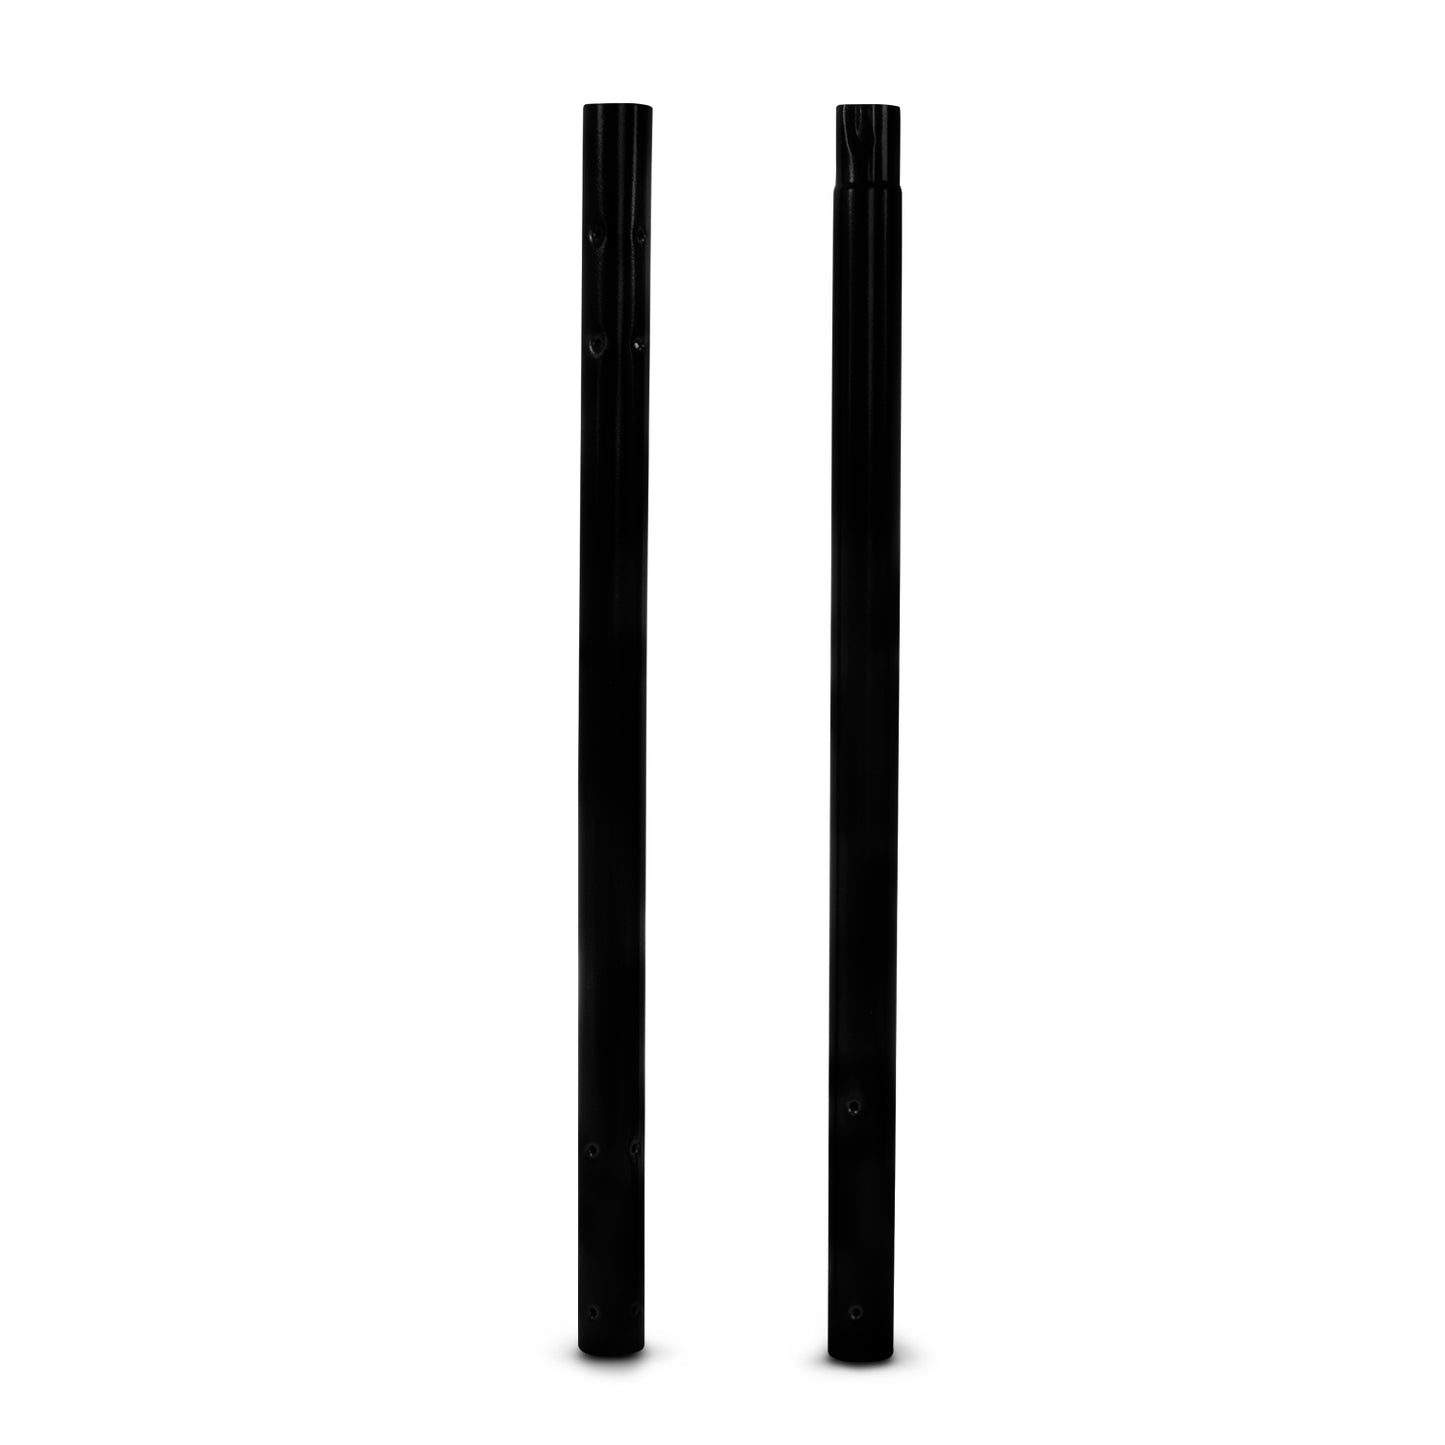 Tradineur - Perchero de pie metálico negro con 8 ganchos, 173 x 44